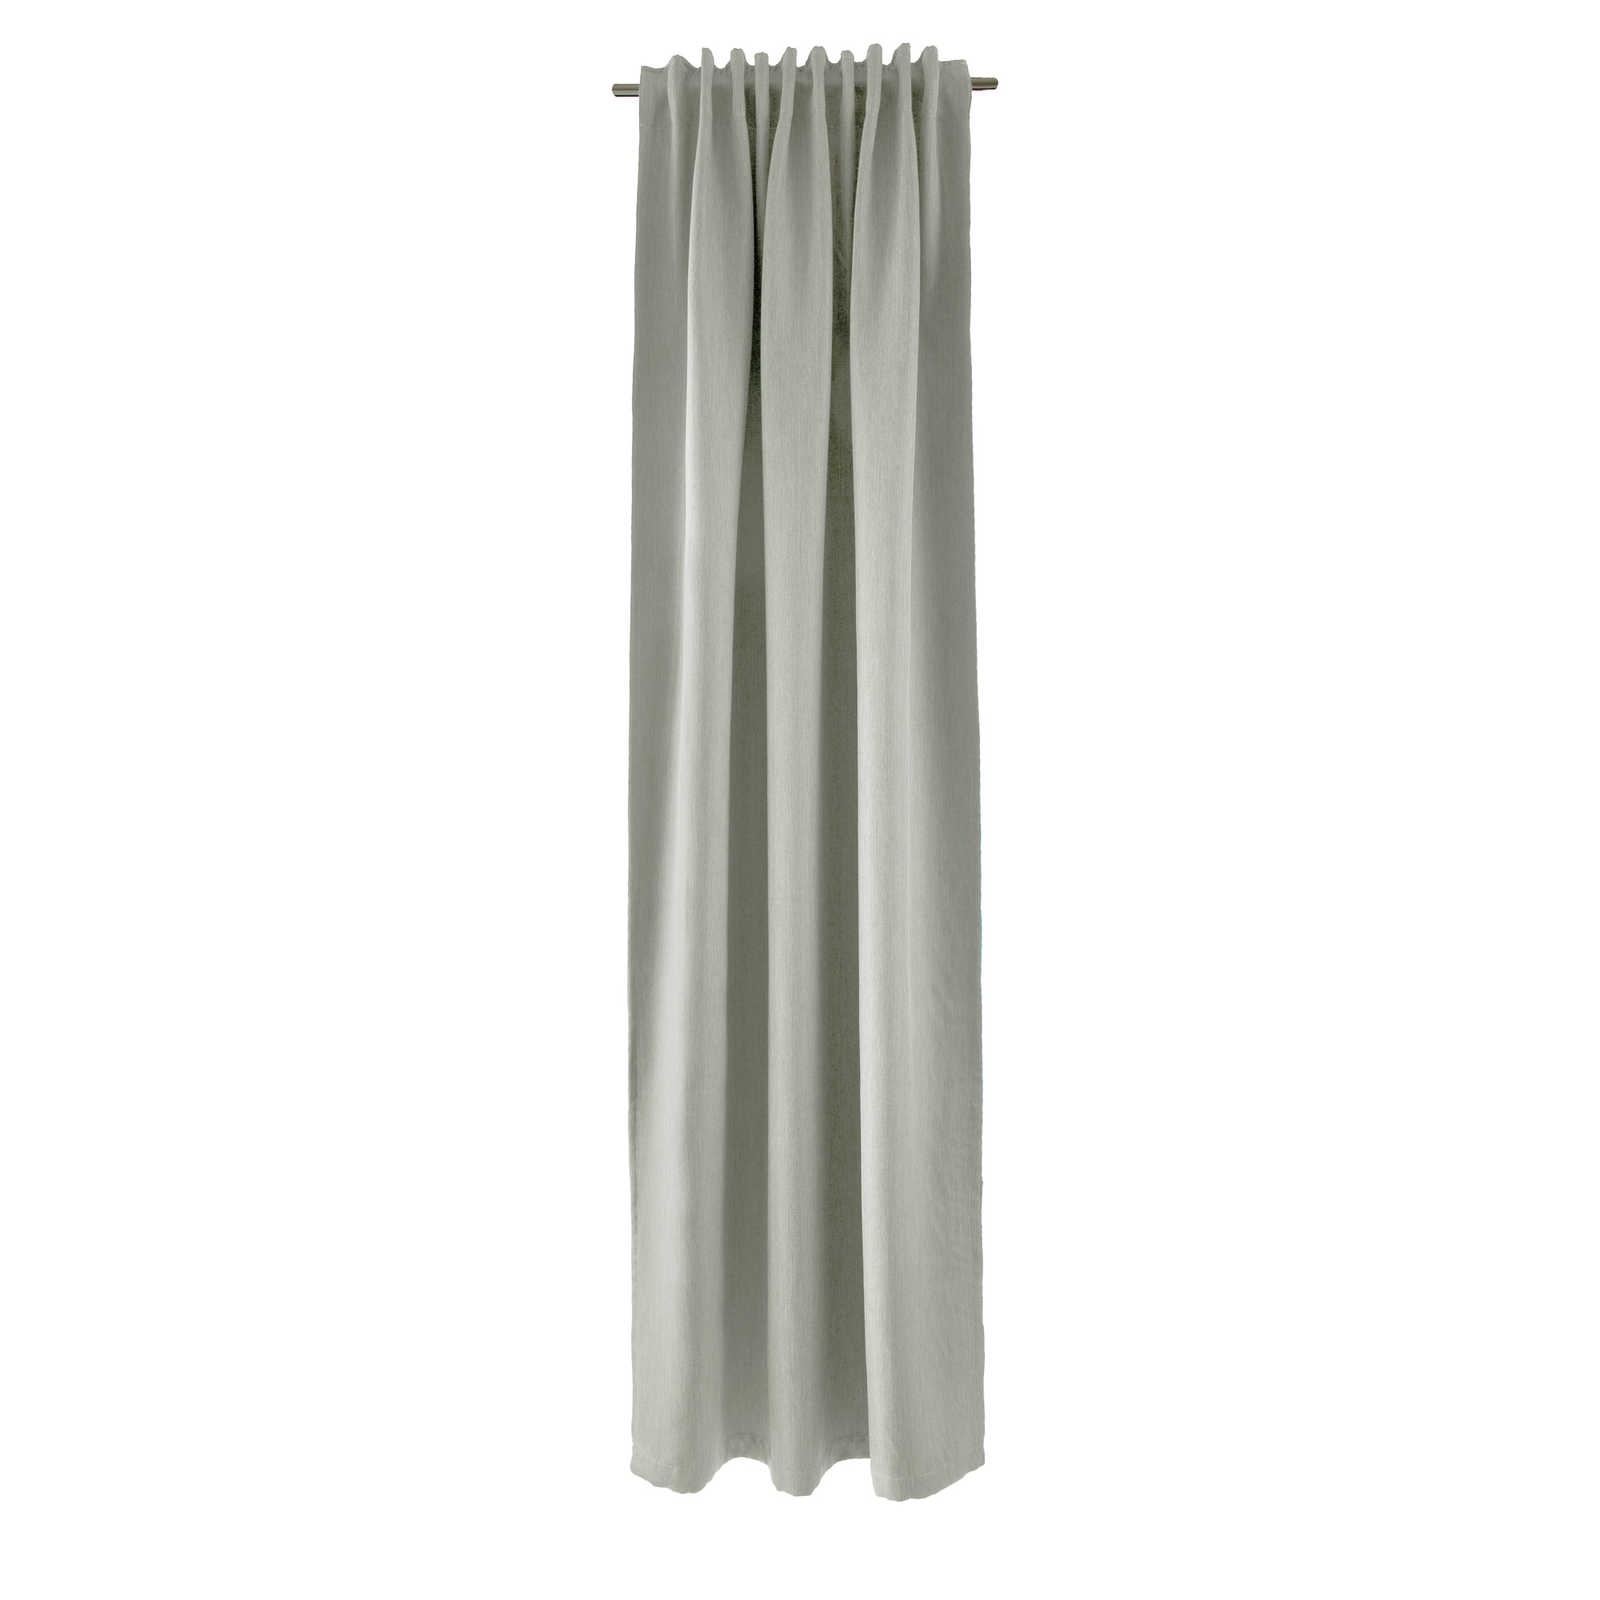 Echarpe décorative à passants 140 cm x 245 cm Fibre synthétique gris clair
